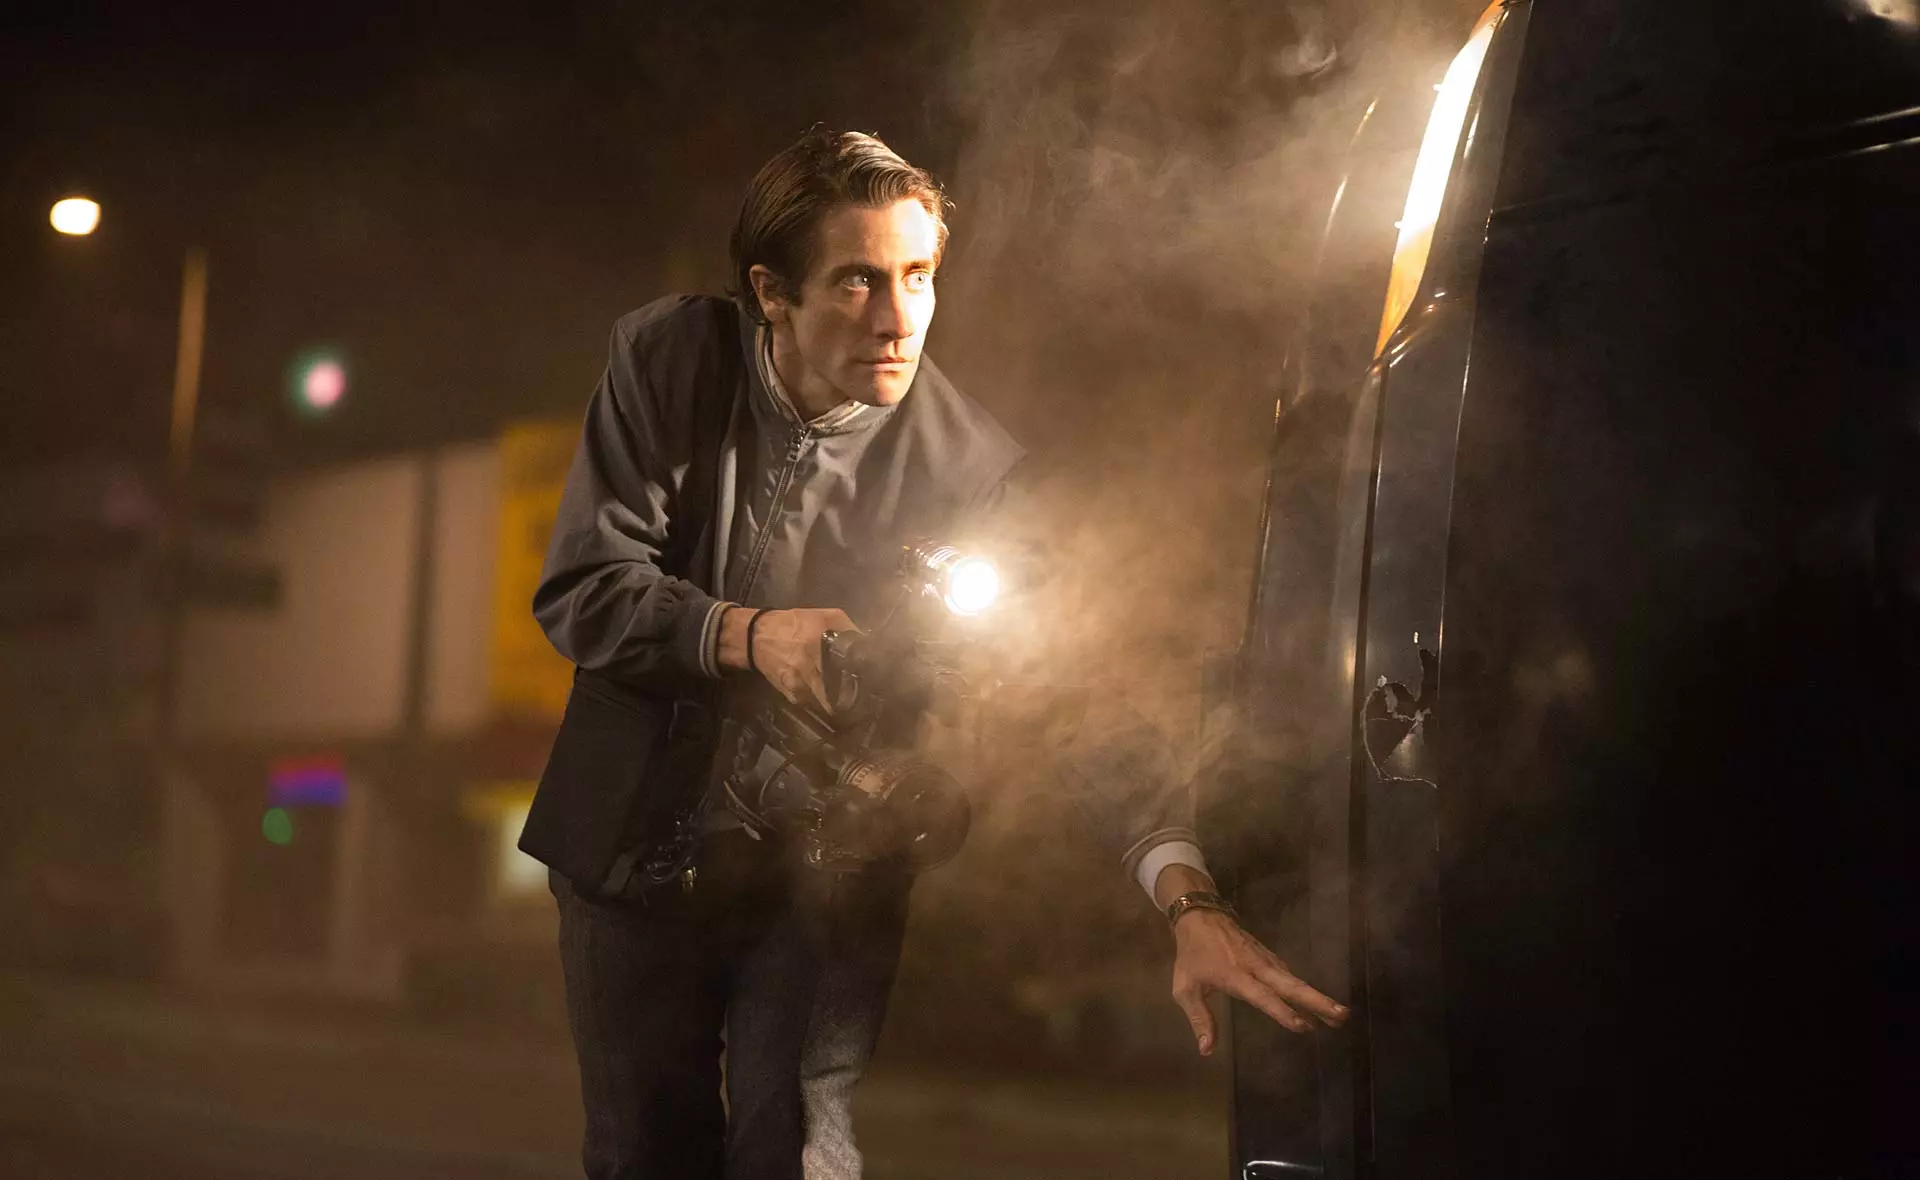 جیلنهال در فیلم شبگرد پنهان شده پشت ماشین برای گرفتن فیلم از صحنه جرم